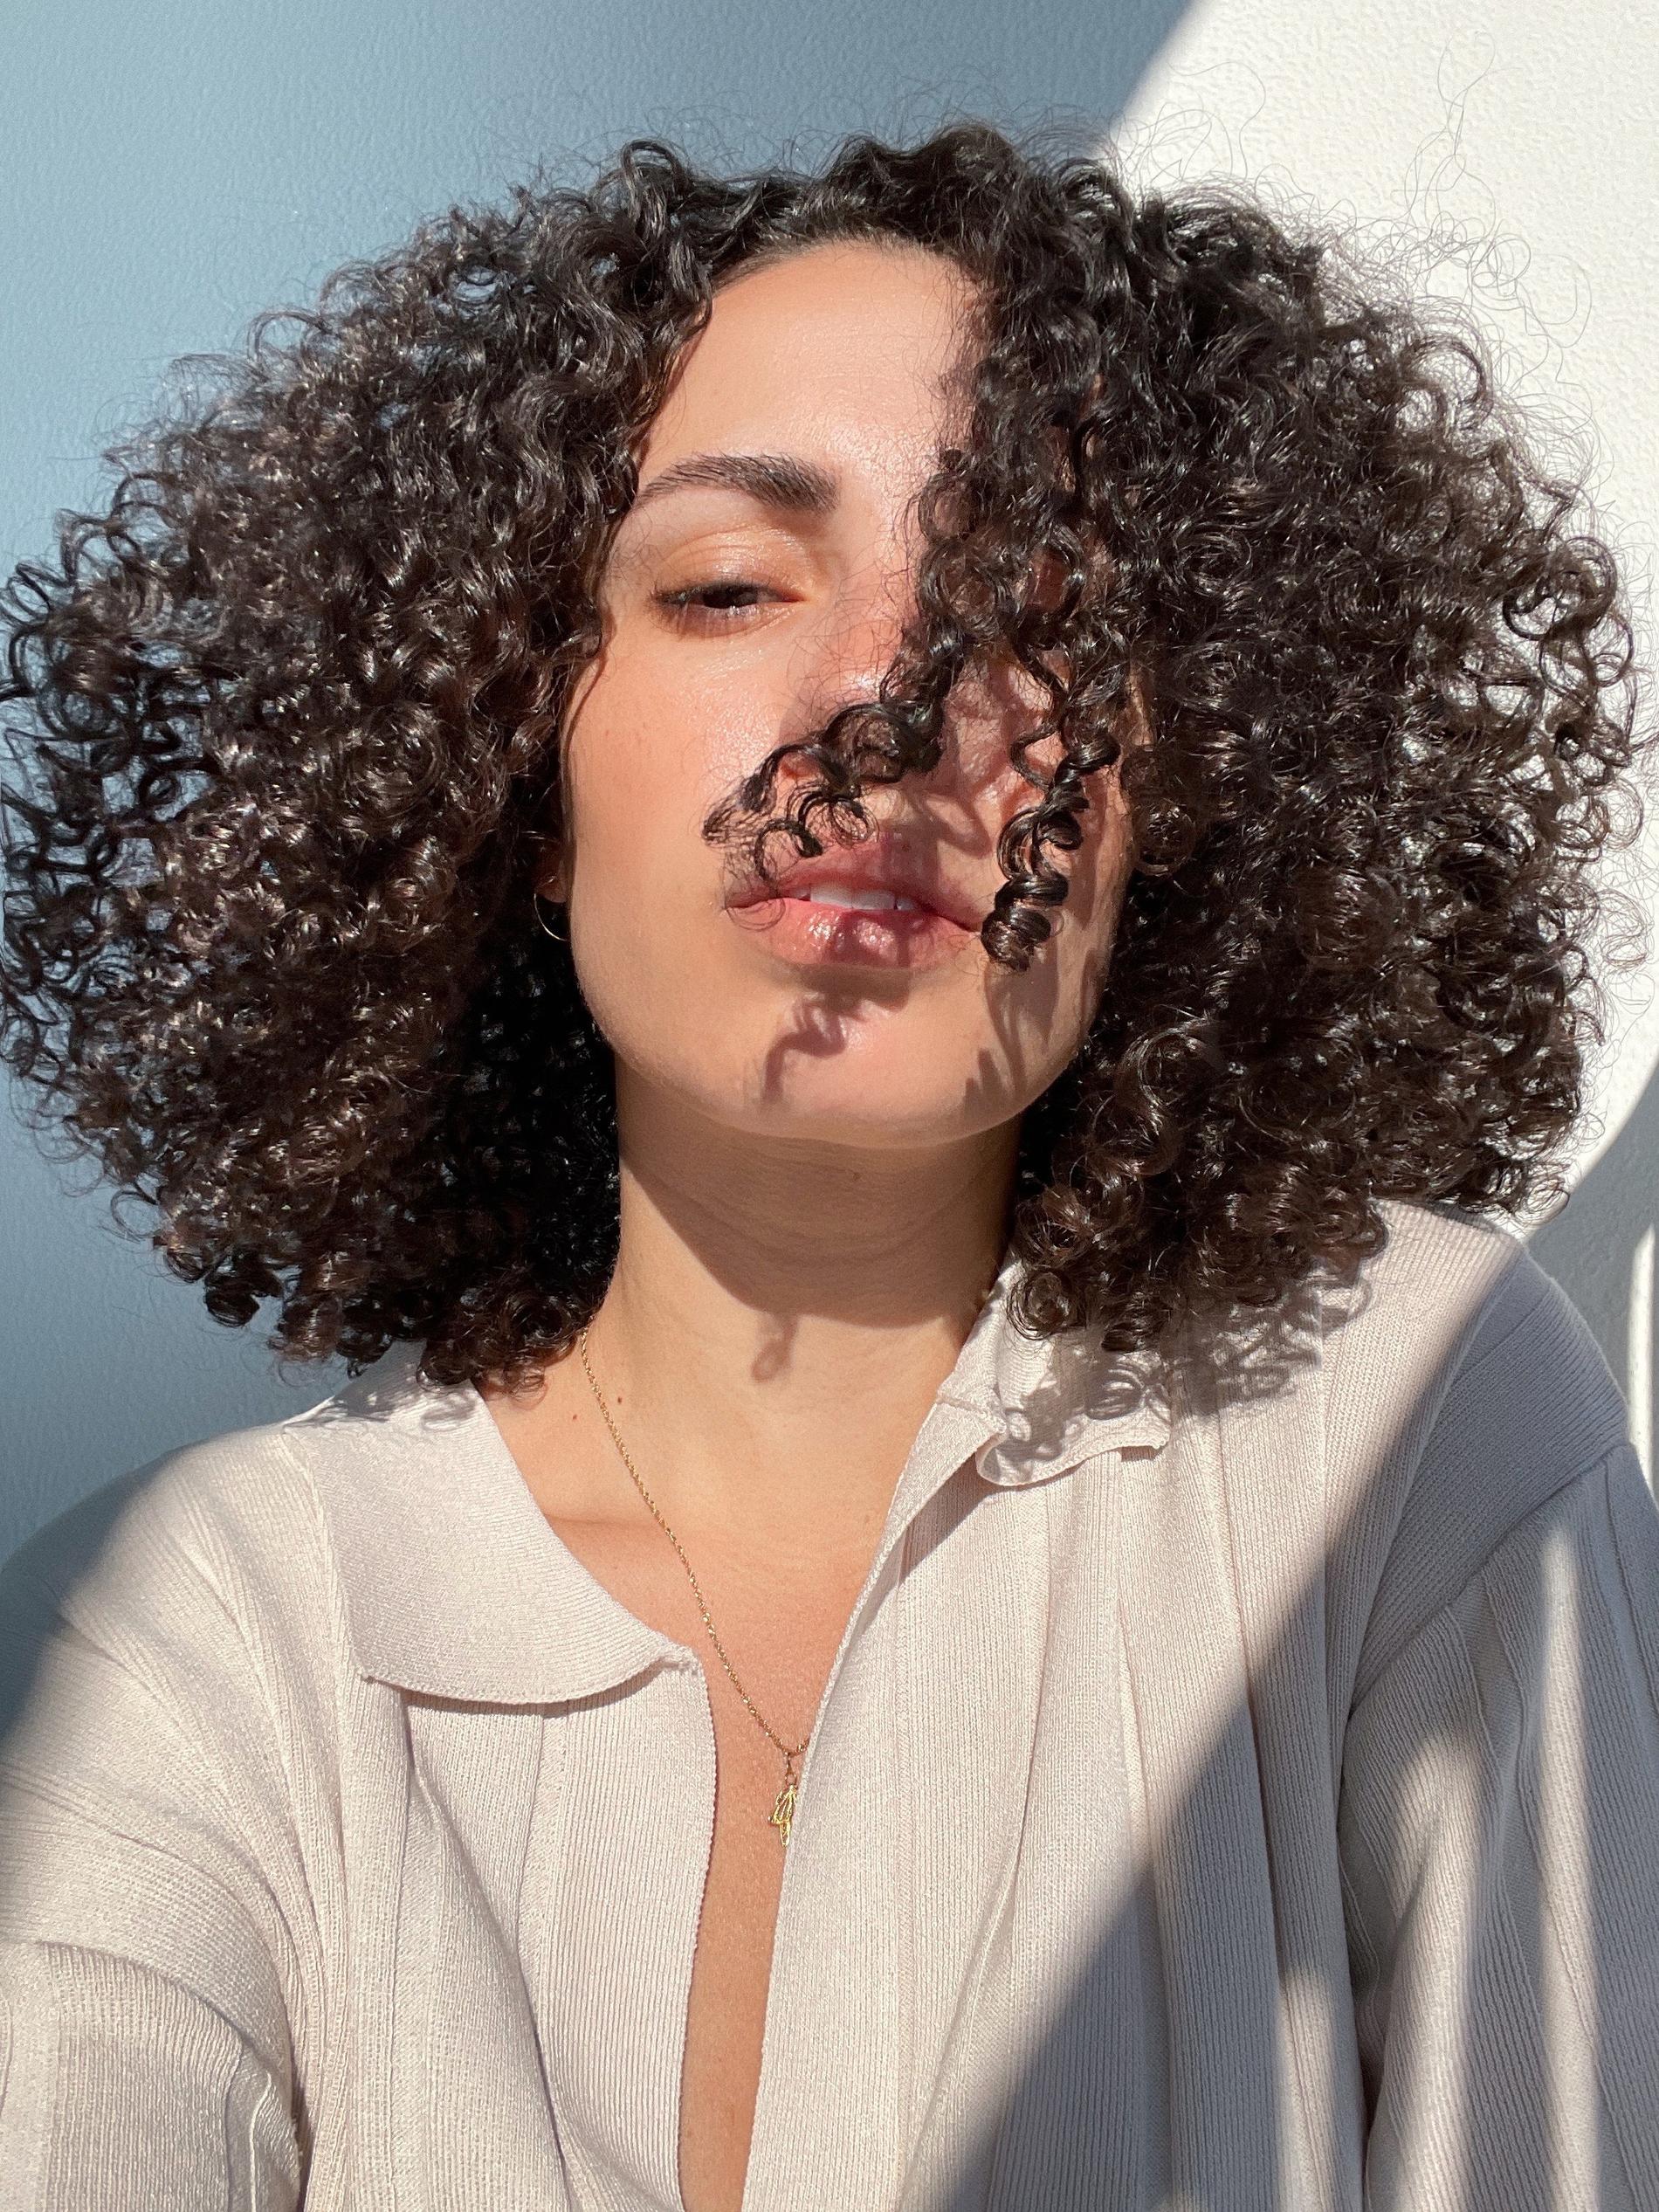 Sofia Hassani som är känd från Instagramkontot Curlsfirst kommer att synas mer på Wellness